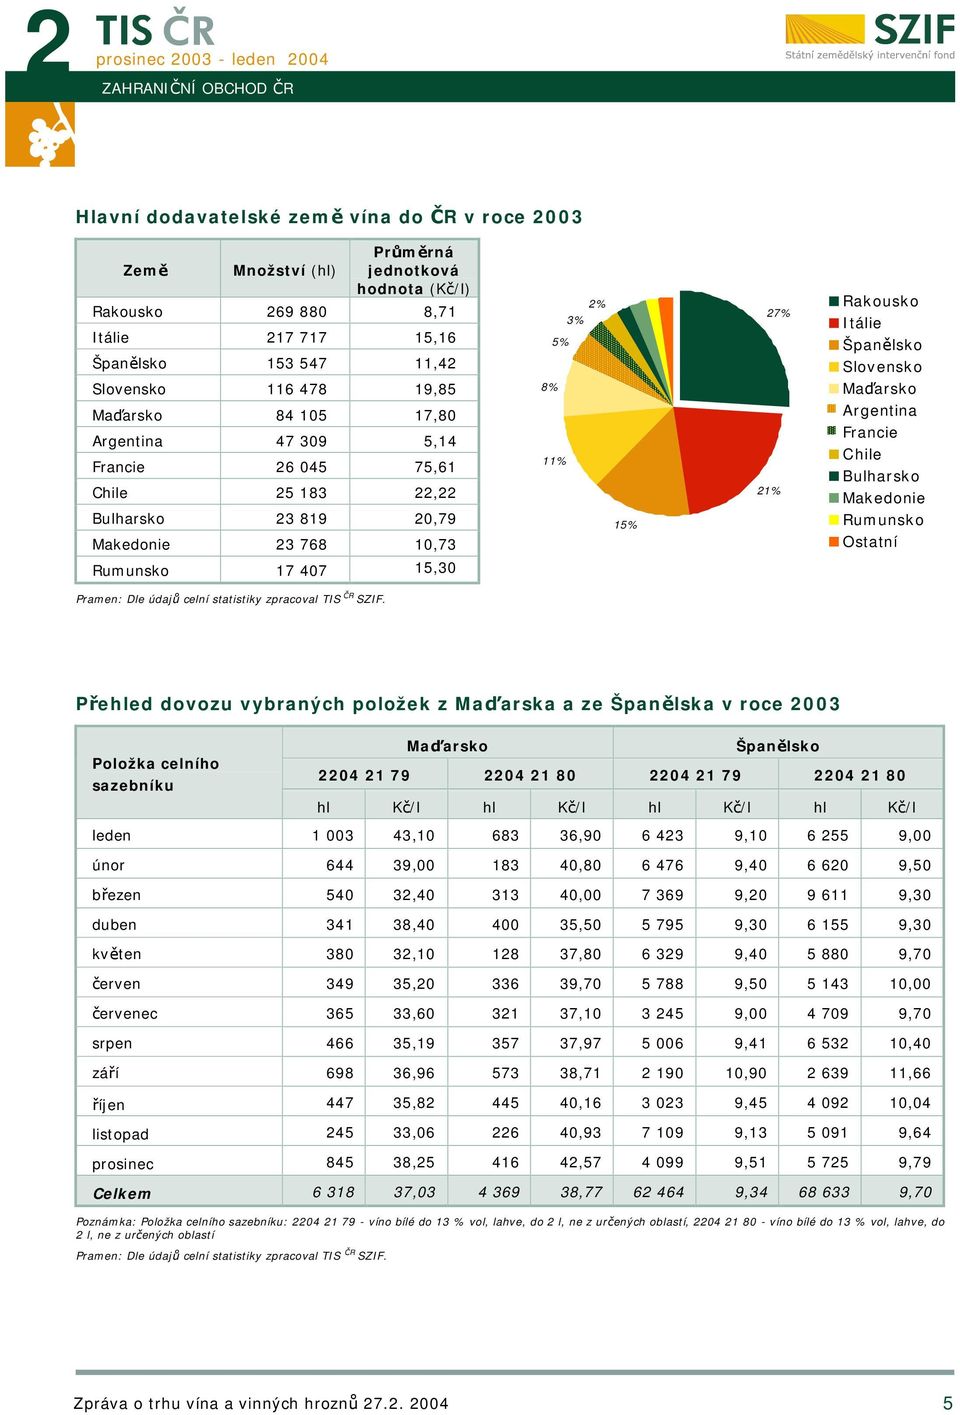 Slovensko Maďarsko Argentina Francie Chile Bulharsko Makedonie Rumunsko Ostatní Rumunsko 17 407 15,30 Přehled dovozu vybraných položek z Maďarska a ze Španělska v roce 2003 Položka celního sazebníku